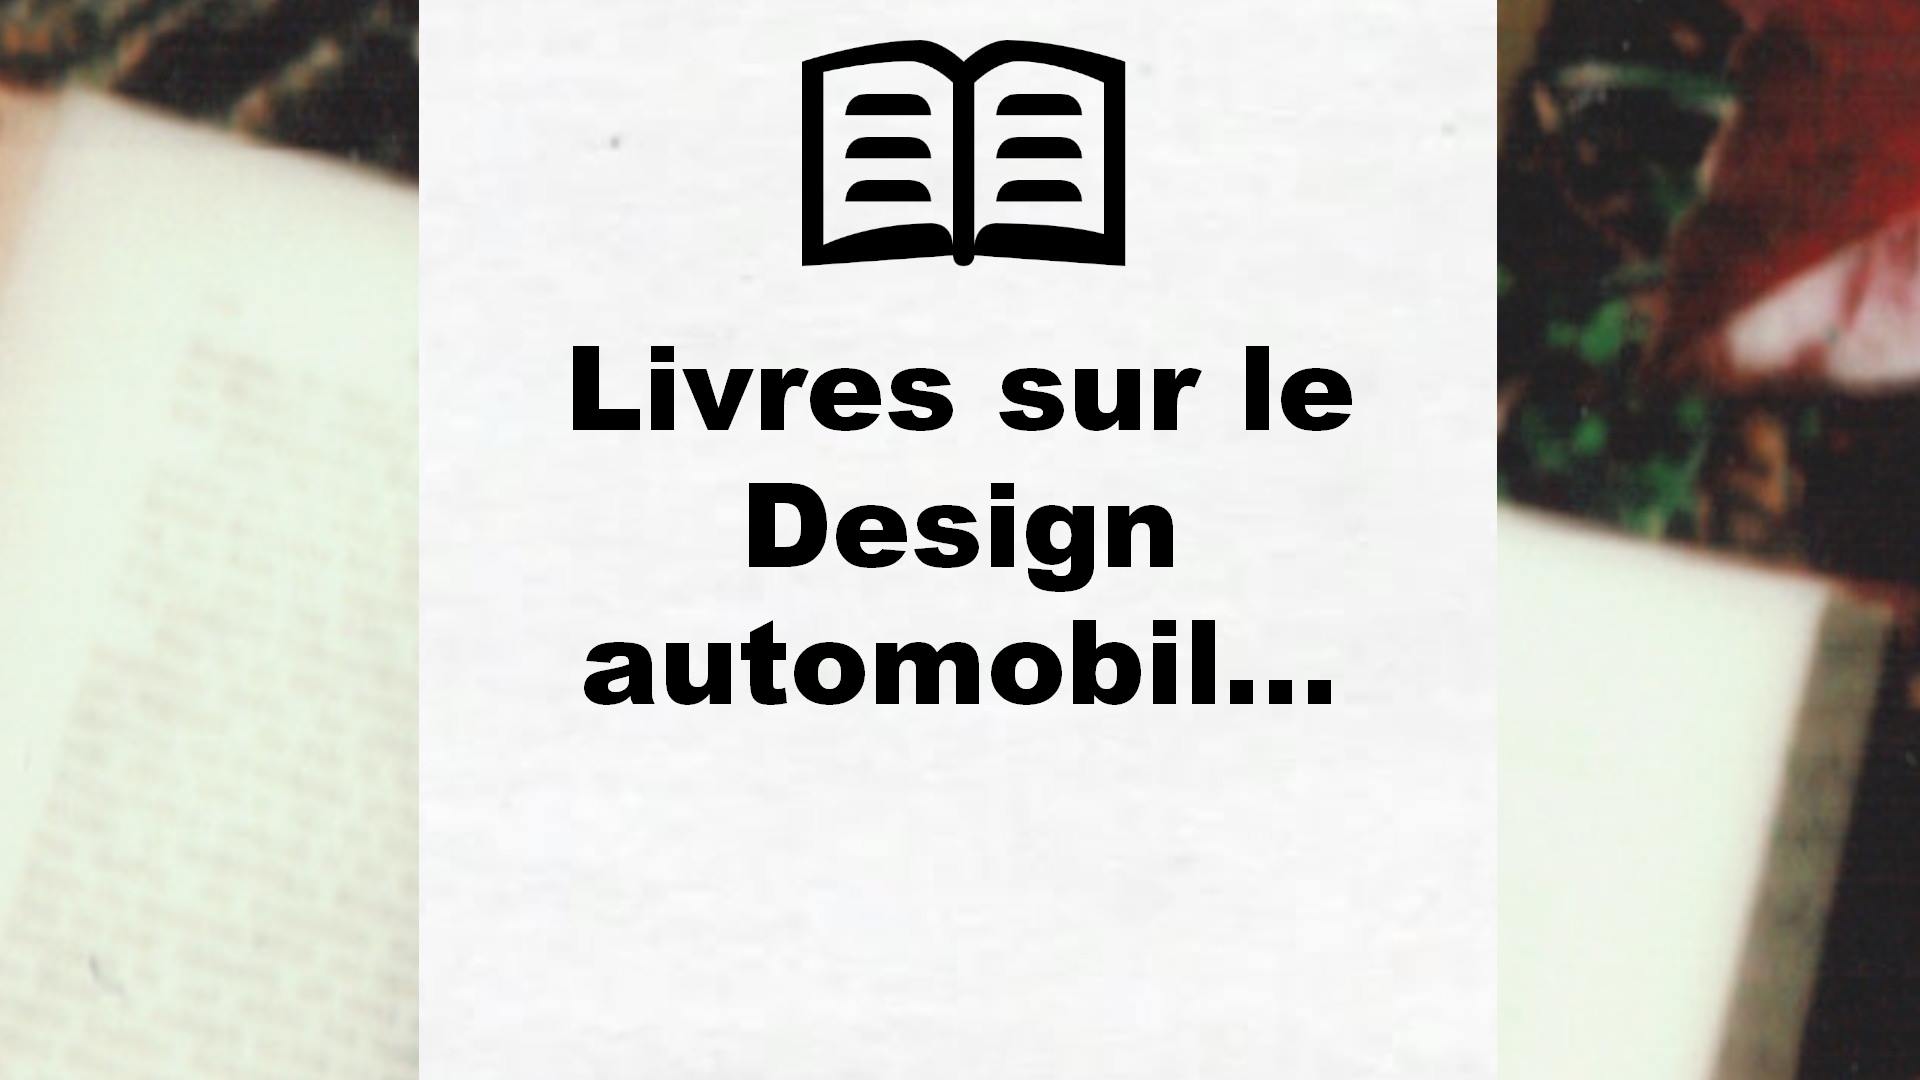 Livres sur le Design automobile